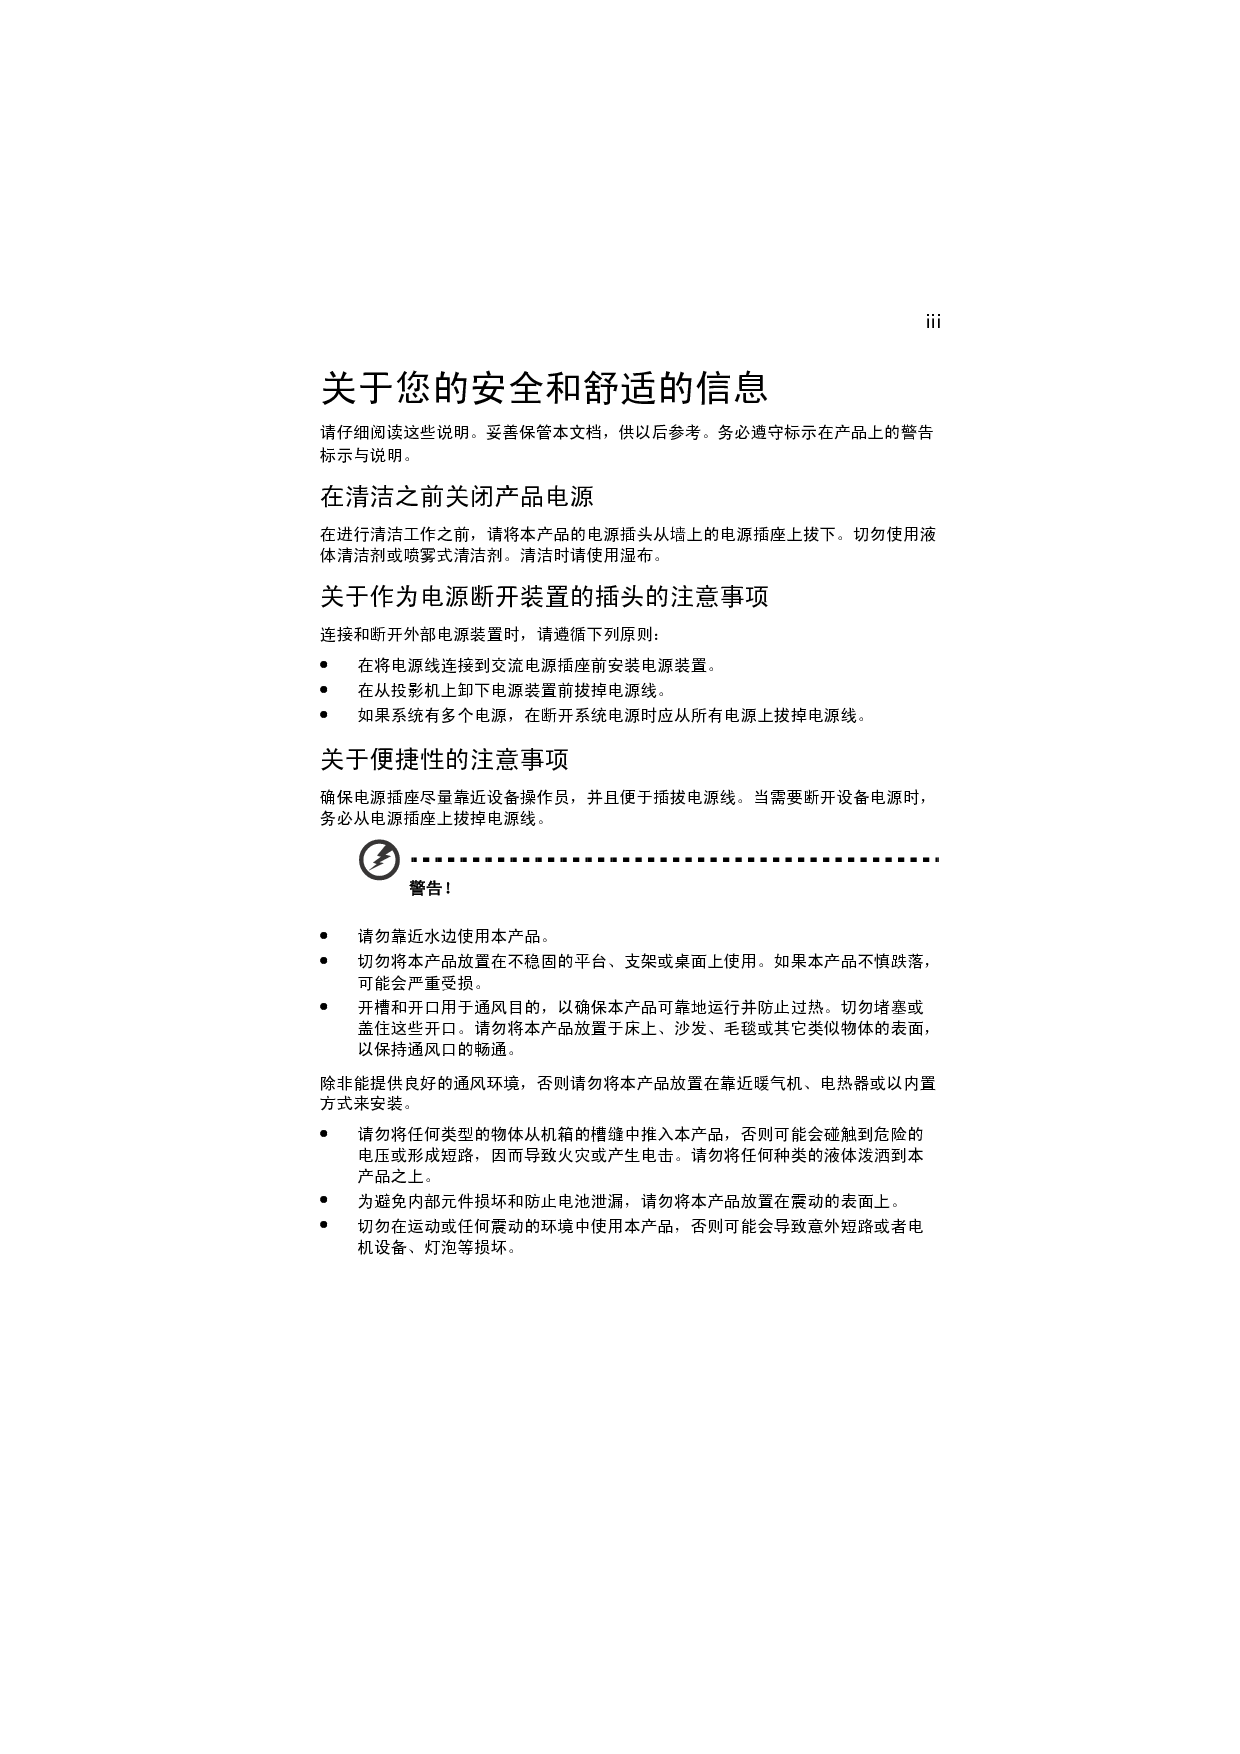 宏碁 Acer D500, D510DT, EV-S40, X1170 用户手册 第2页